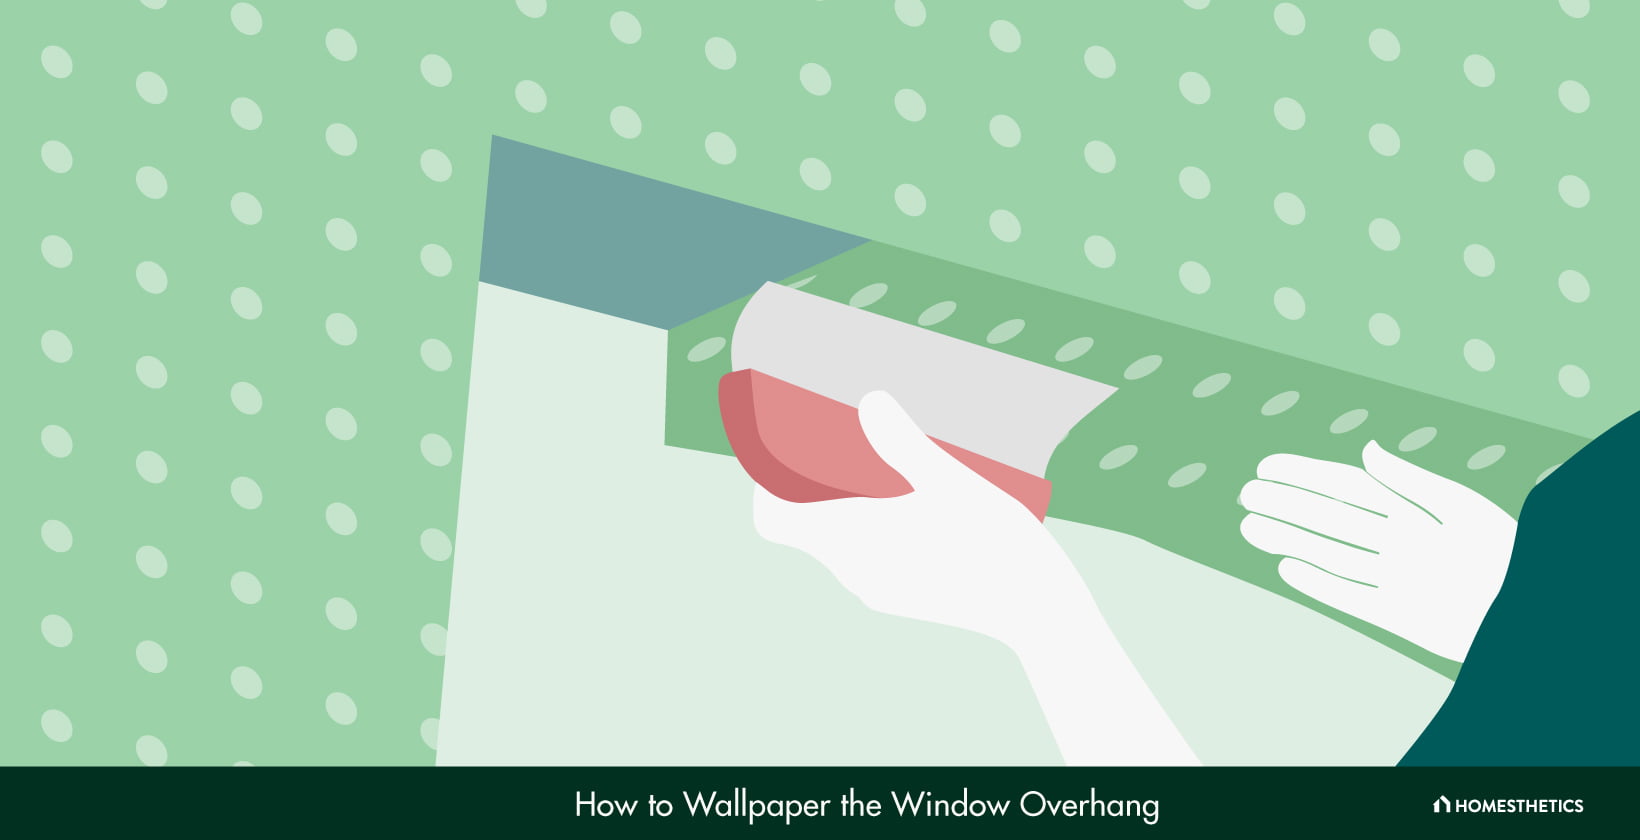 How to Wallpaper the Window Overhang